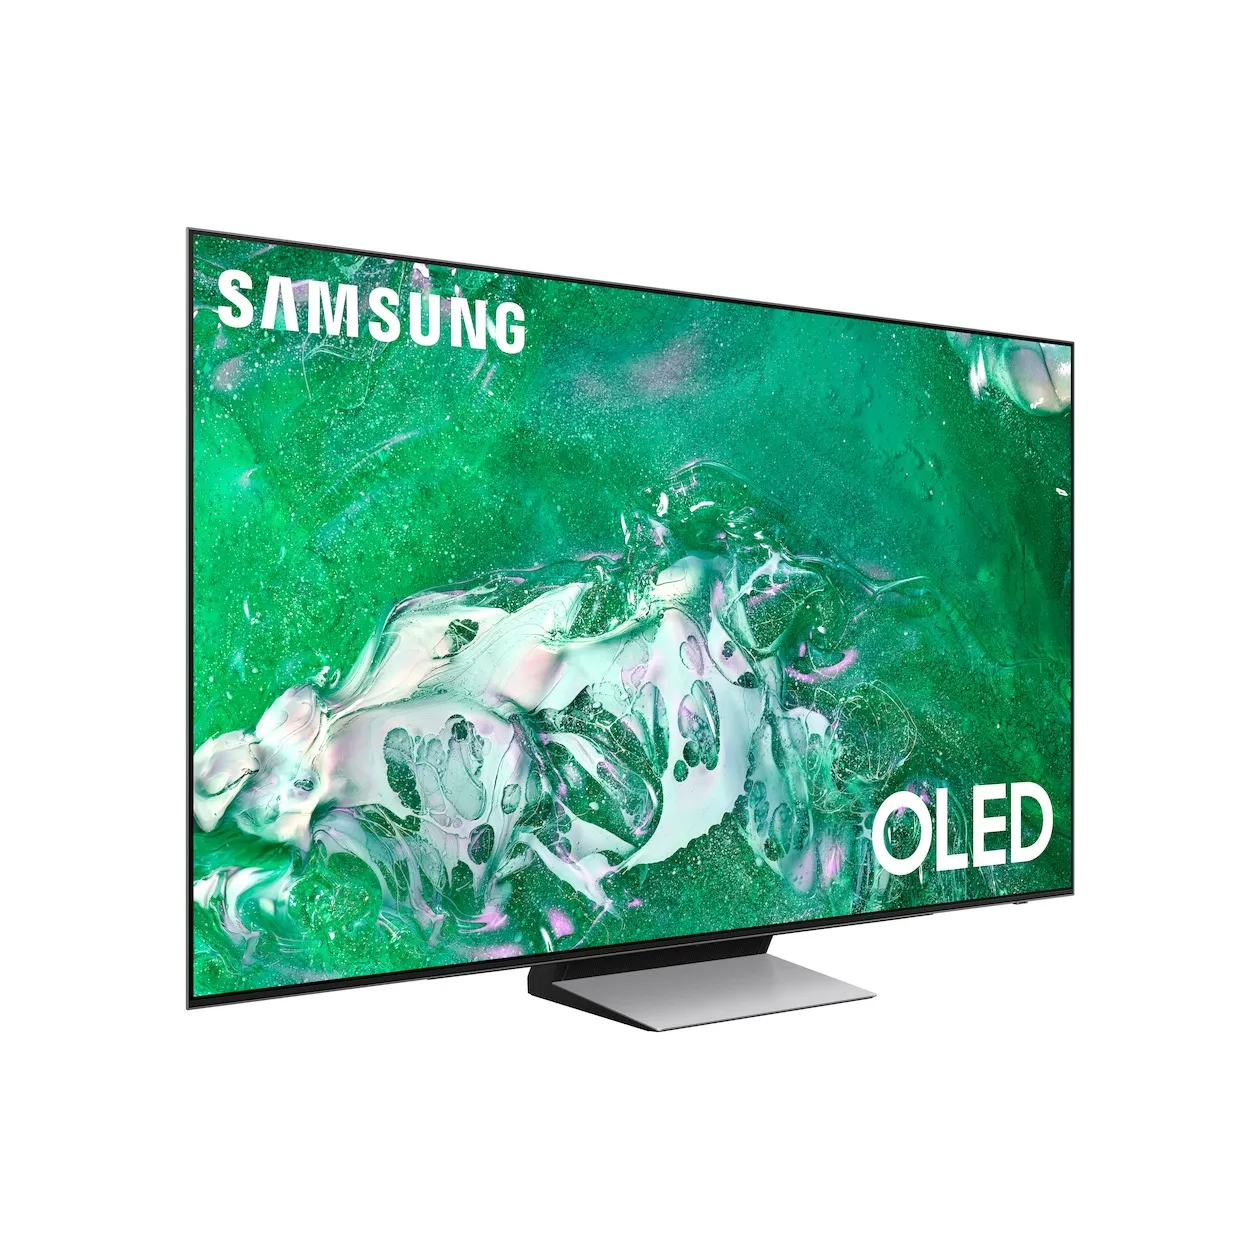 Samsung OLED 4K 77S93D (2024)